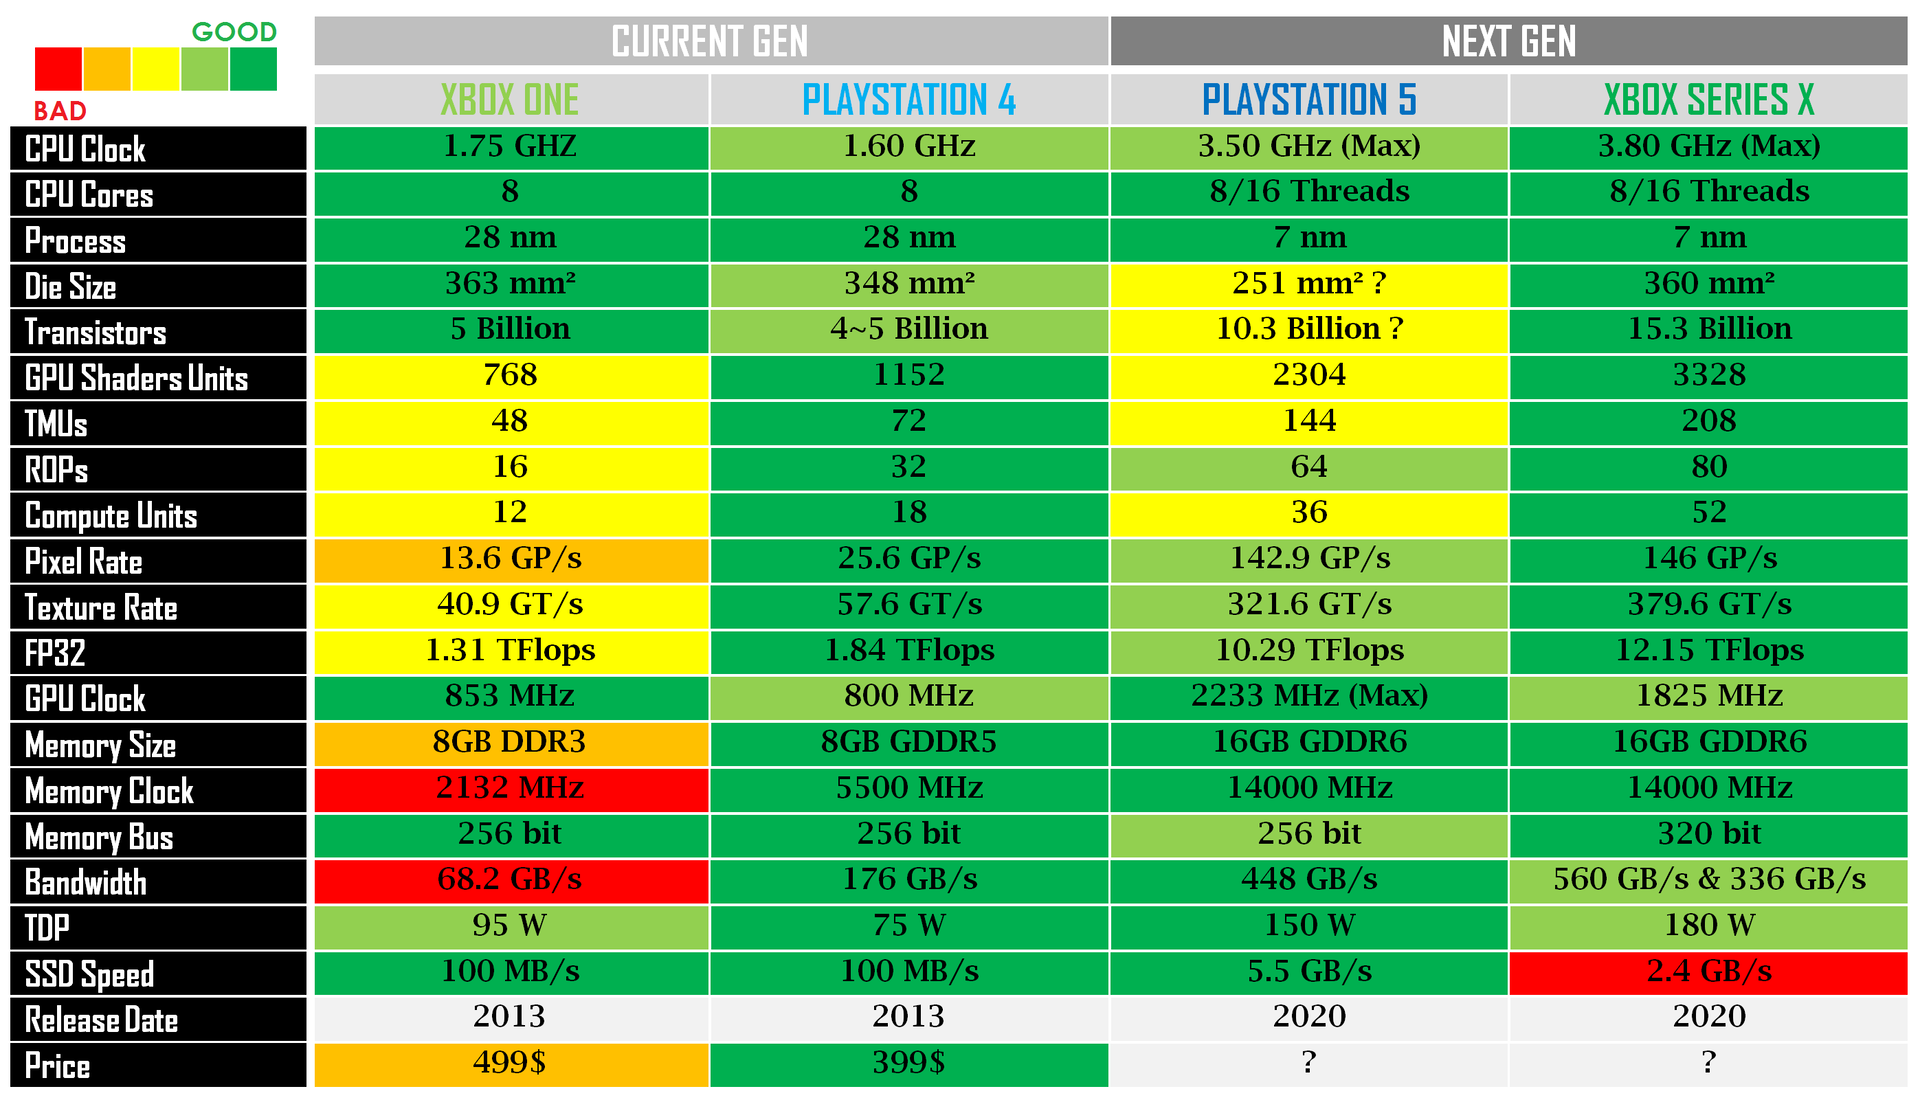 Porównanie aktualizacji Playstation 5